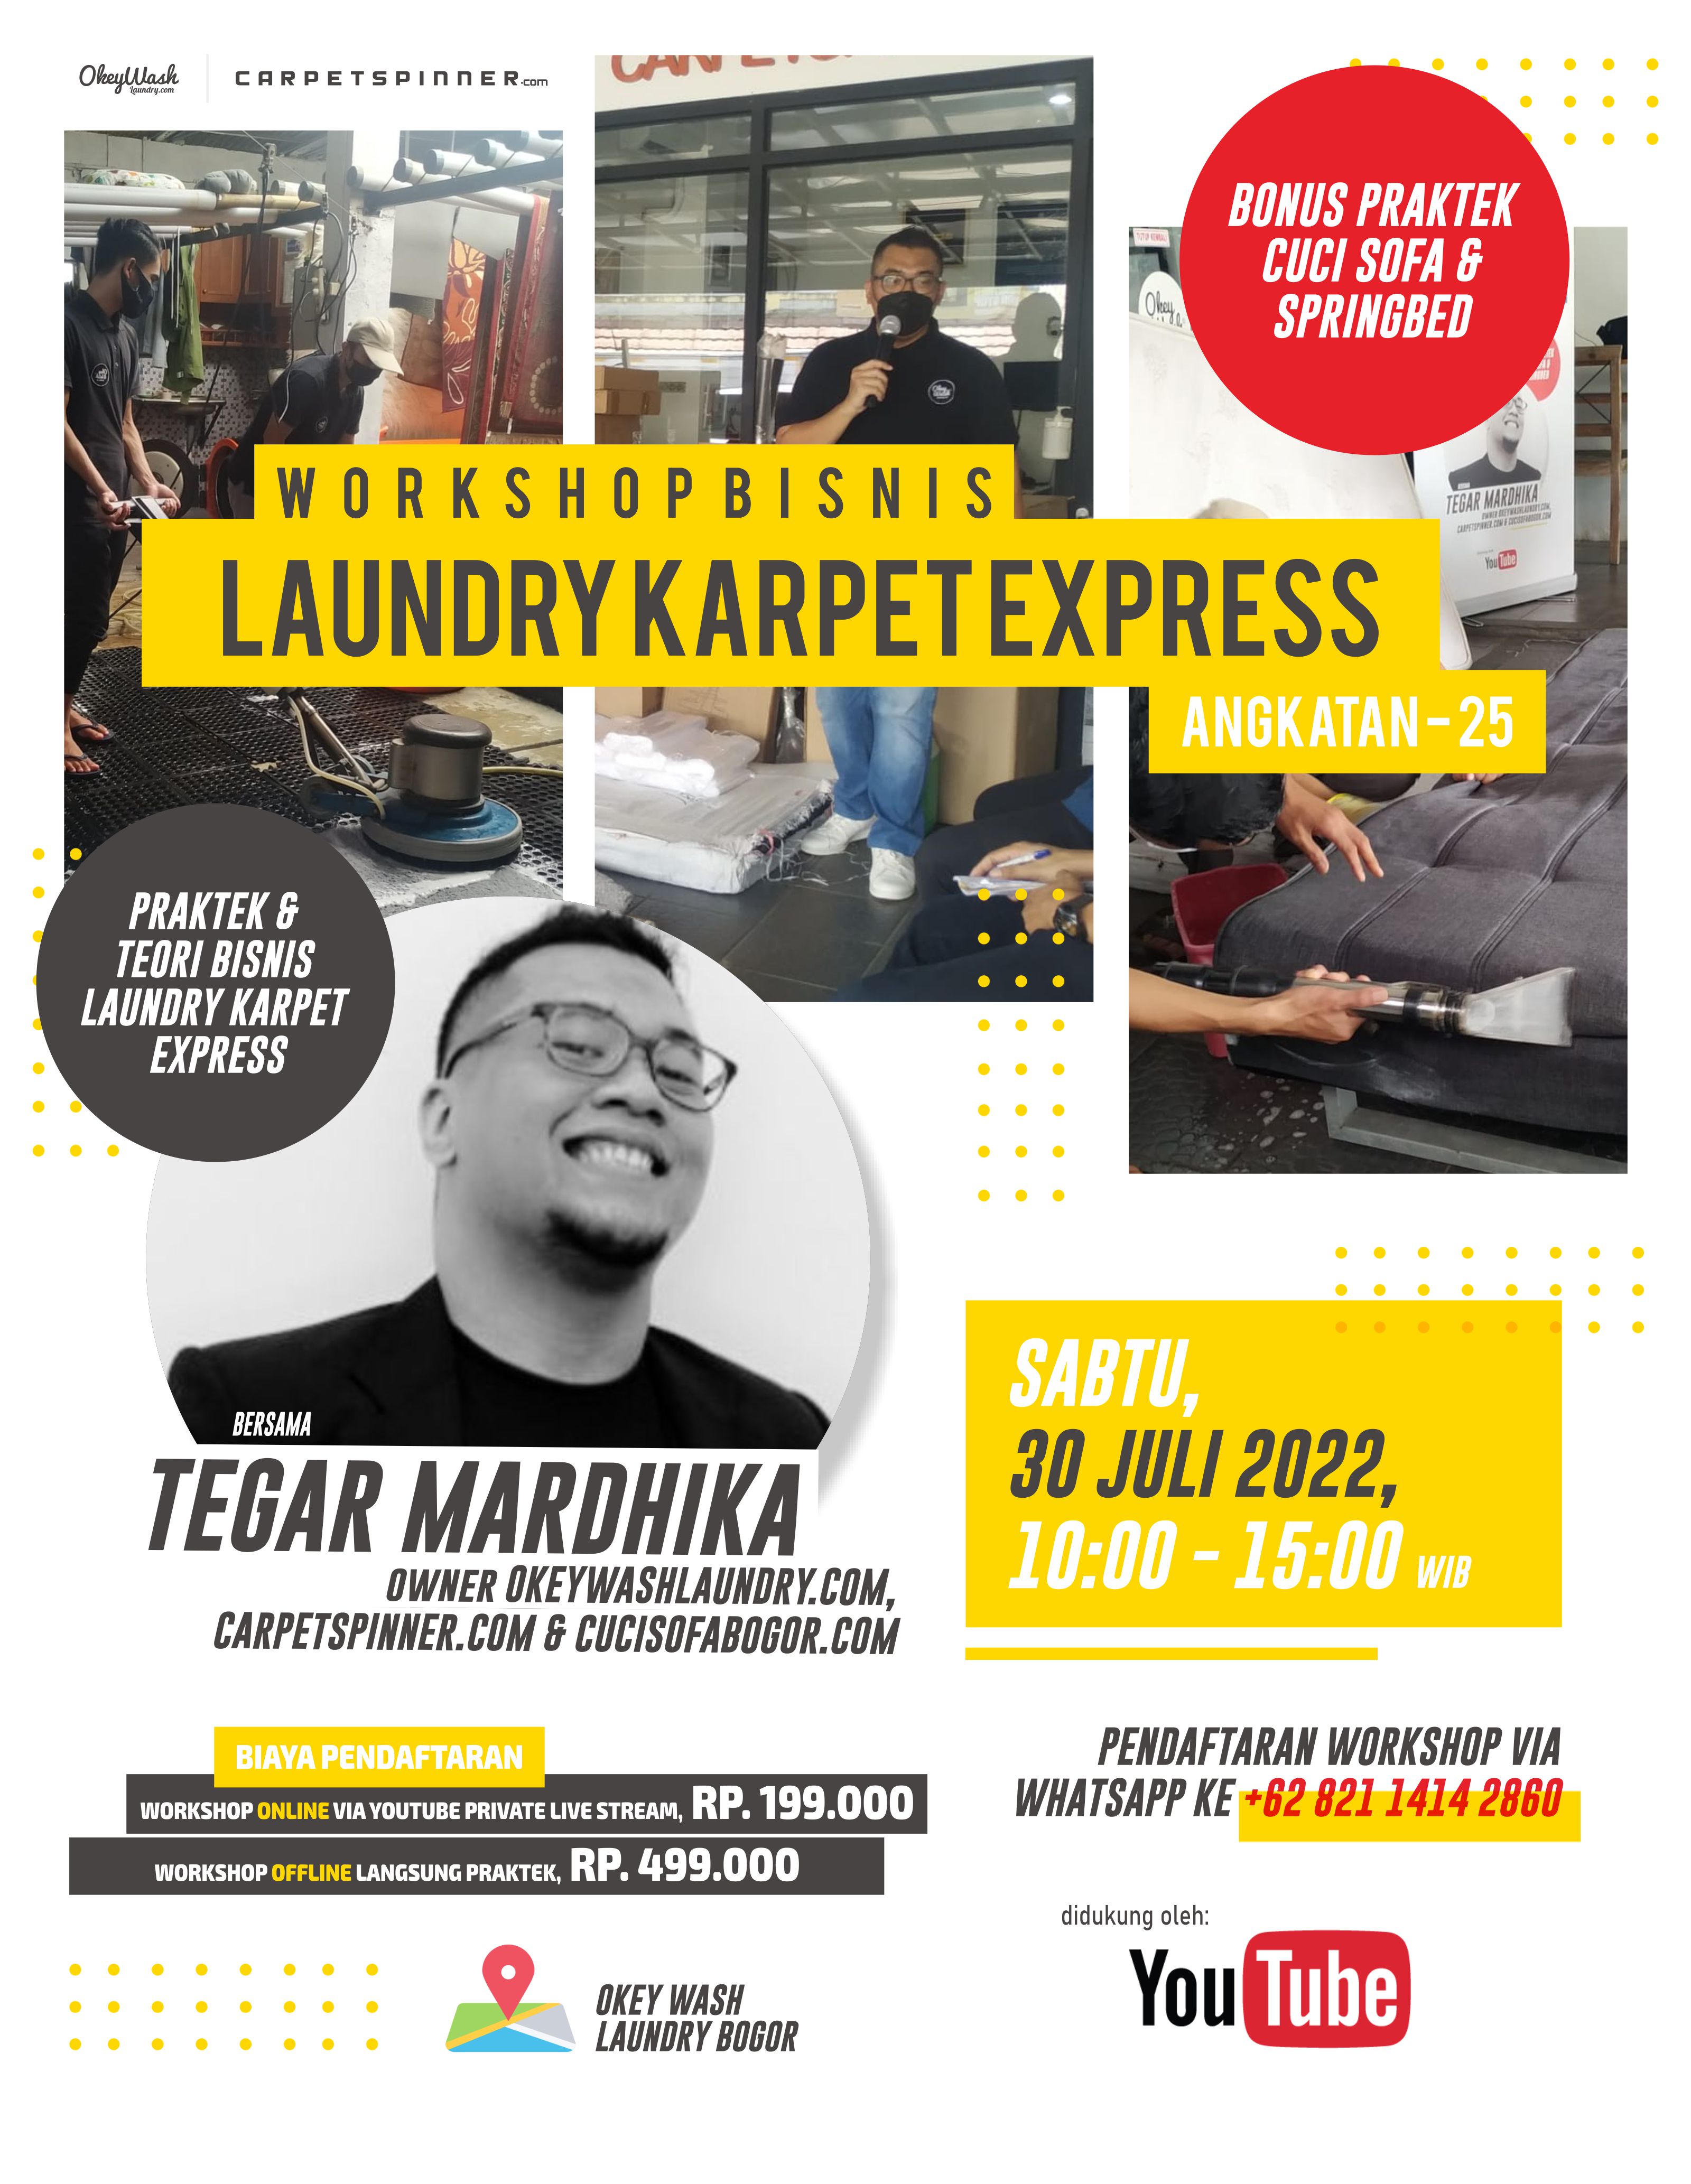 Workshop Bisnis Laundry Karpet Express, 30 Juli 2022. Daftar Sekarang Juga Via WhatsApp ke +6282114142860!